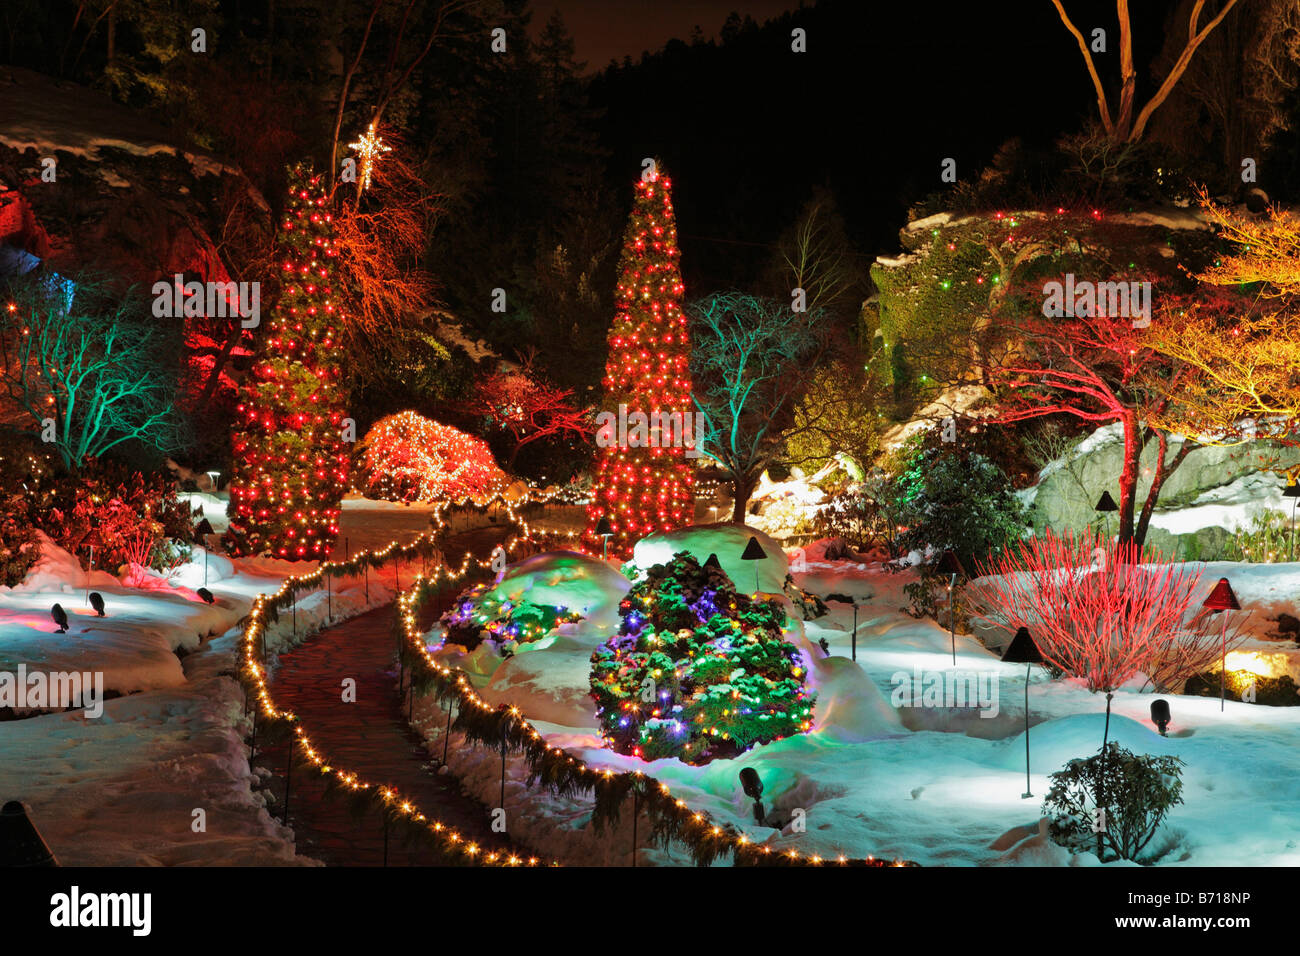 Versunkene Garten mit Weihnachtsbeleuchtung in der Nacht Butchart Gardens Victoria British Columbia Kanada Stockfoto